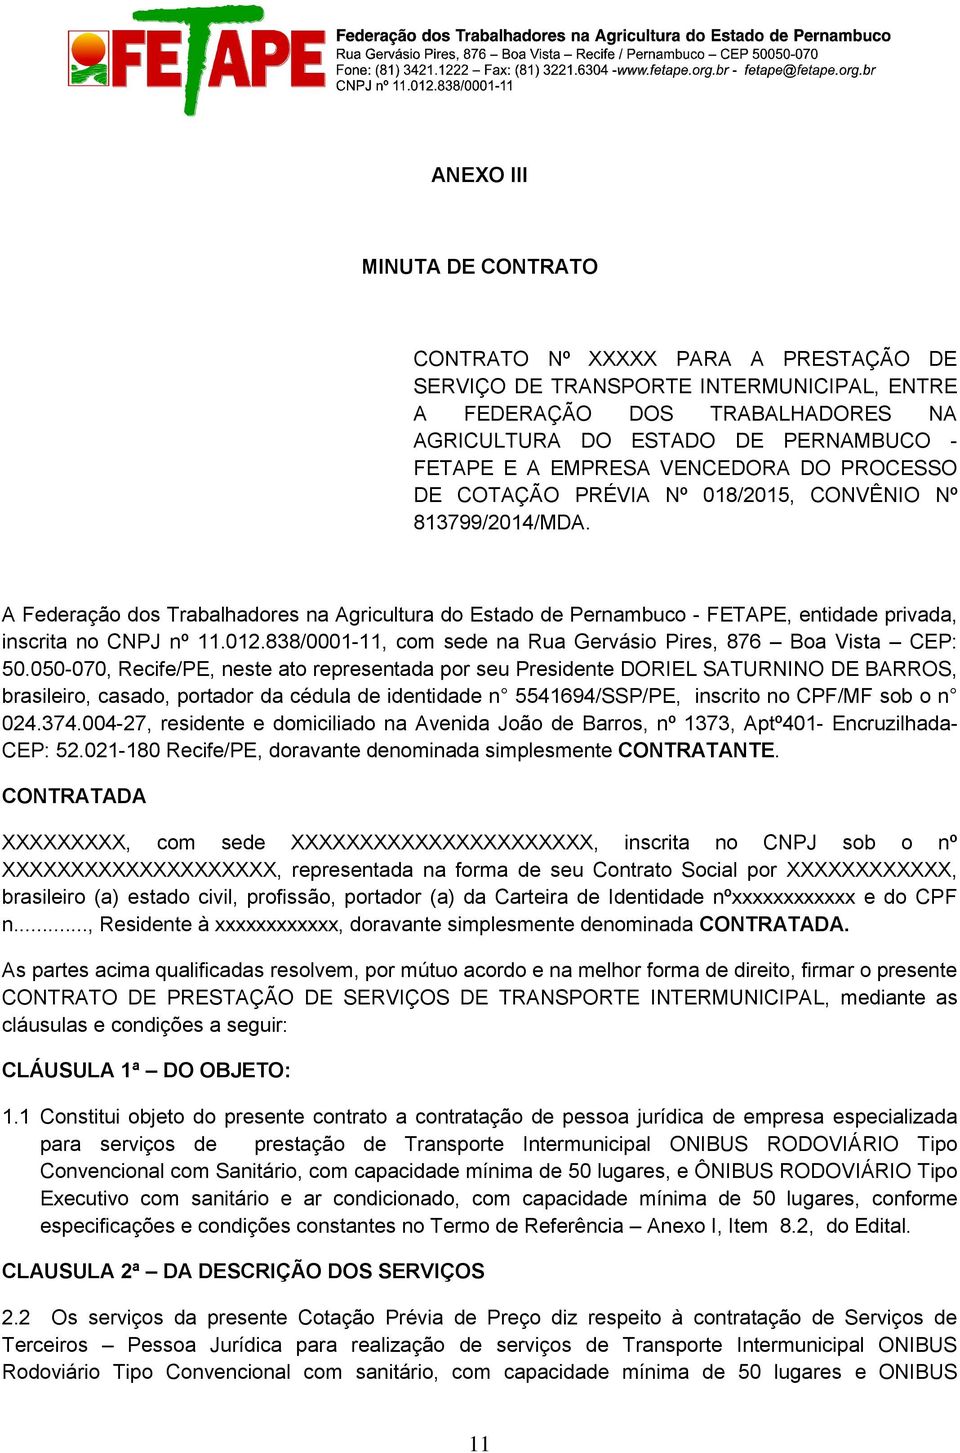 A Federação dos Trabalhadores na Agricultura do Estado de Pernambuco - FETAPE, entidade privada, inscrita no CNPJ nº 11.012.838/0001-11, com sede na Rua Gervásio Pires, 876 Boa Vista CEP: 50.